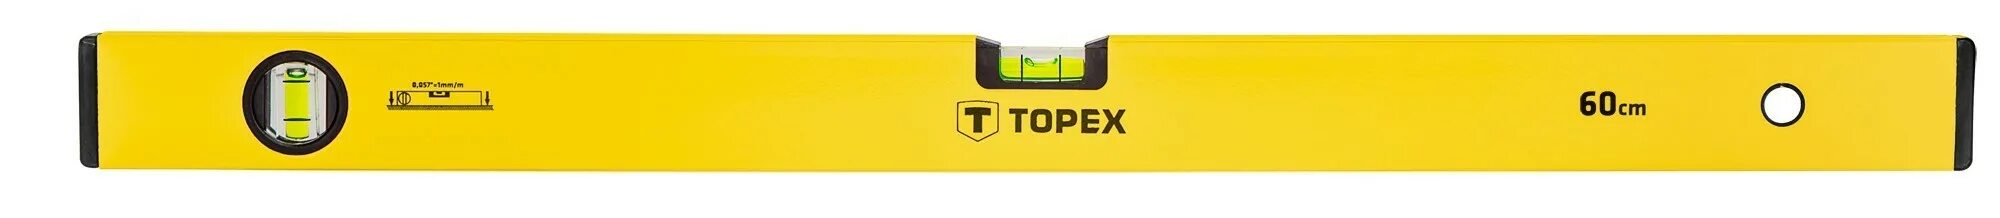 1 500 60. Строительный уровень Topex 29. Уровень Topex 60. Пузырьковый уровень Topex. Уровень алюминиевый 600 мм.